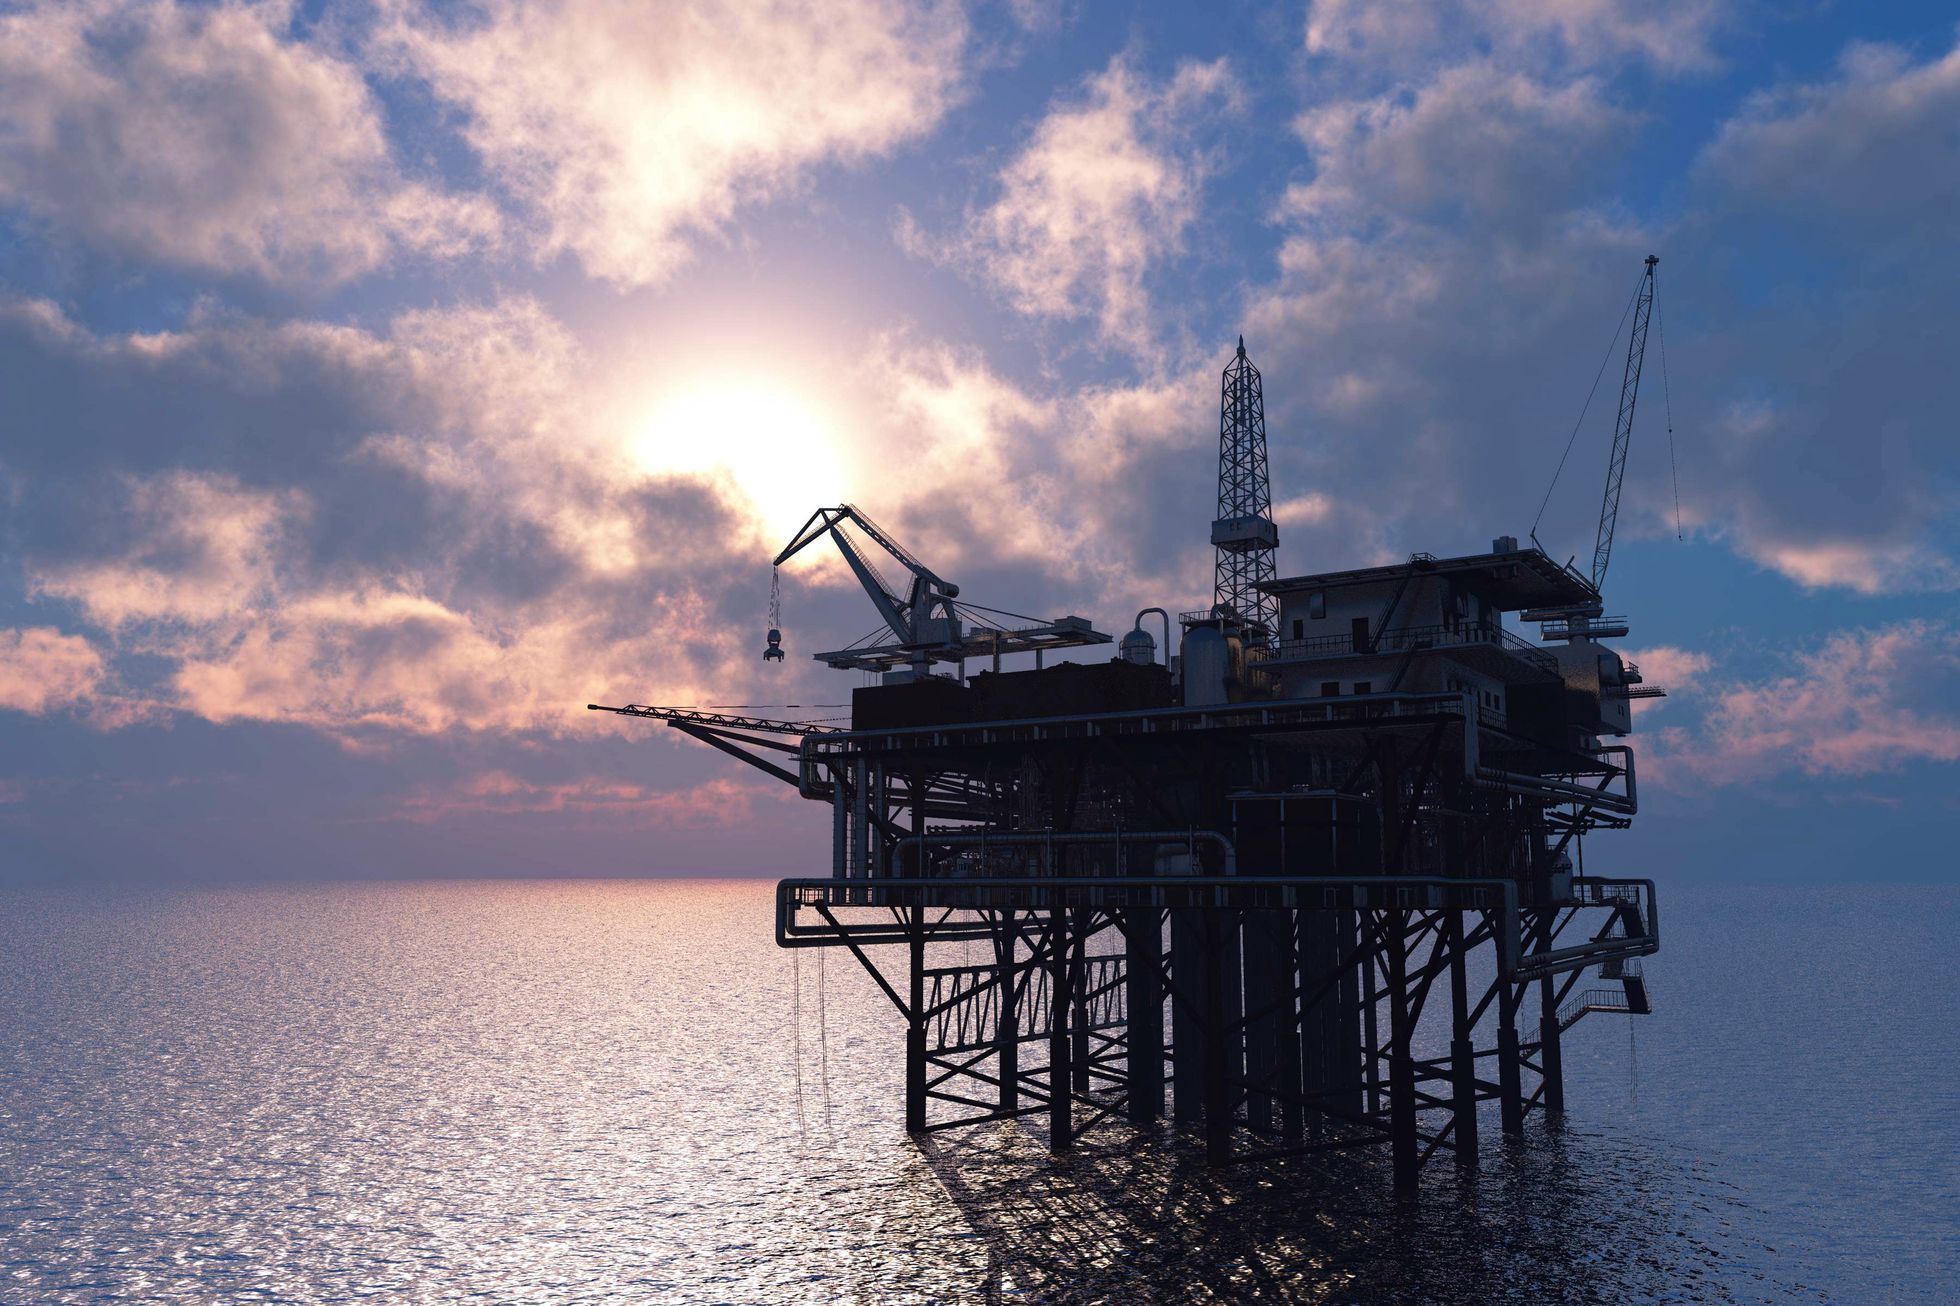 Ilustrační fotografie, ropná plošina na moři, ropa, těžba ropy, 2017